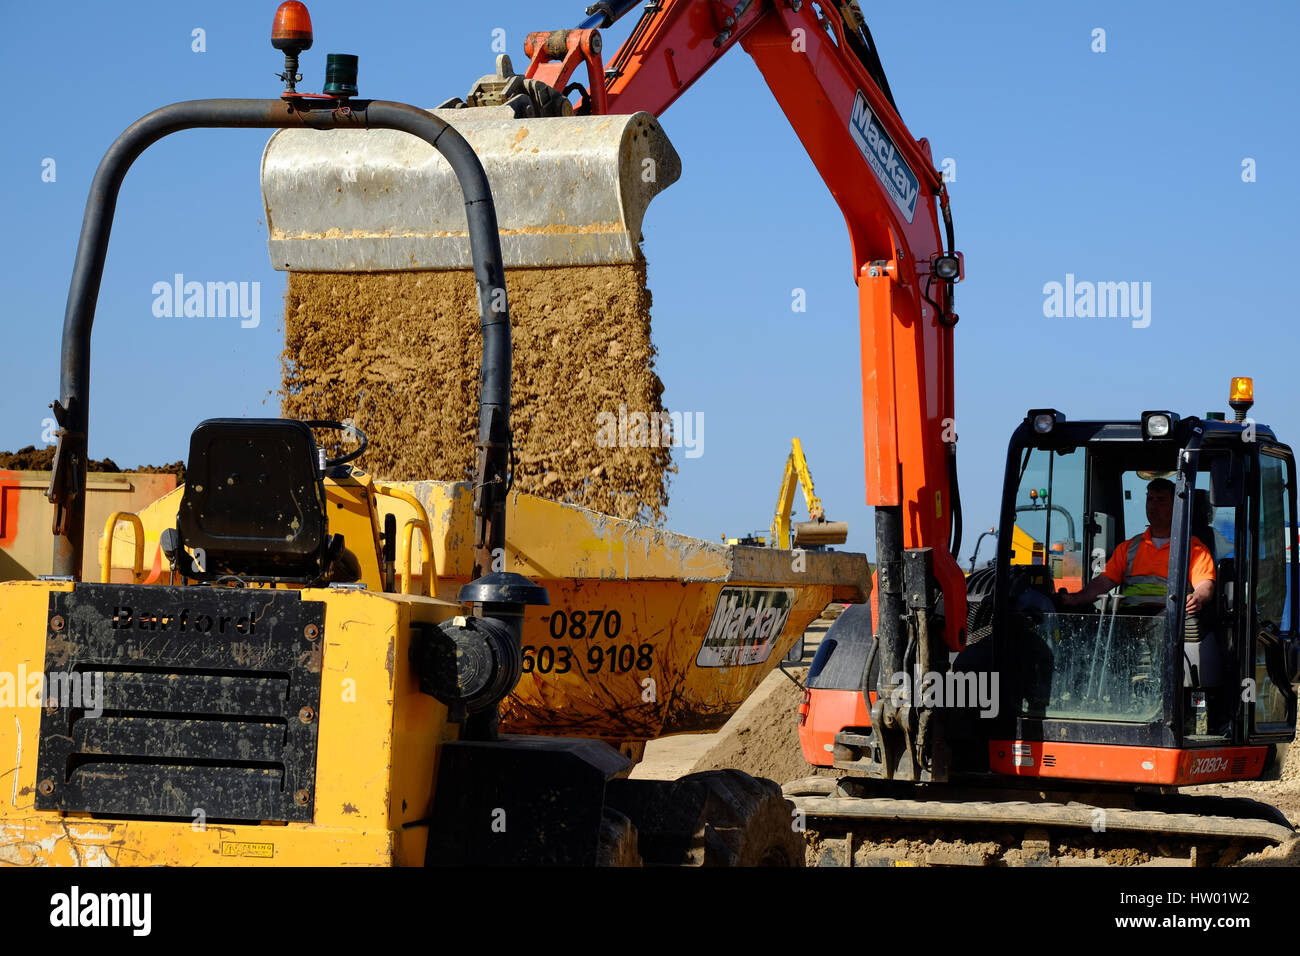 La machinerie lourde utilisée dans la préparation de la terre pour la construction de maisons, Grantham, Lincolnshire, Angleterre, Royaume-Uni. Banque D'Images